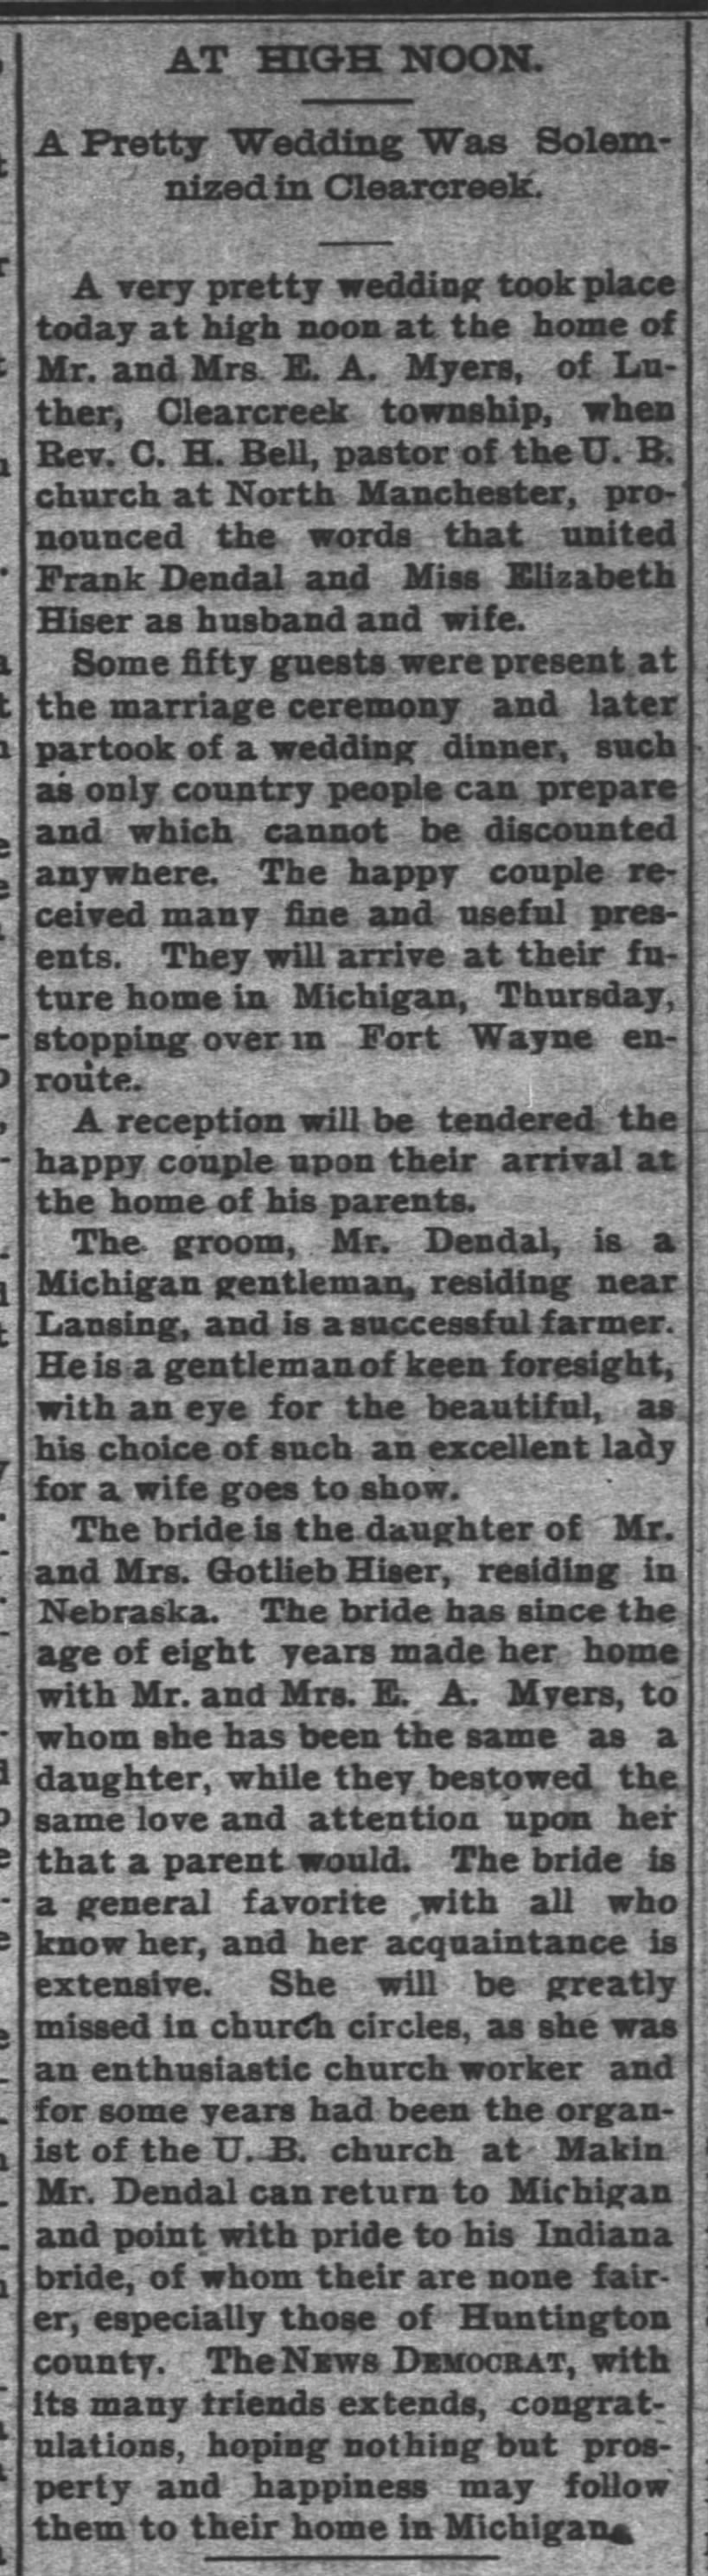 1899 September 14 - Marriage of Elizabeth Hiser and Frank Dendal